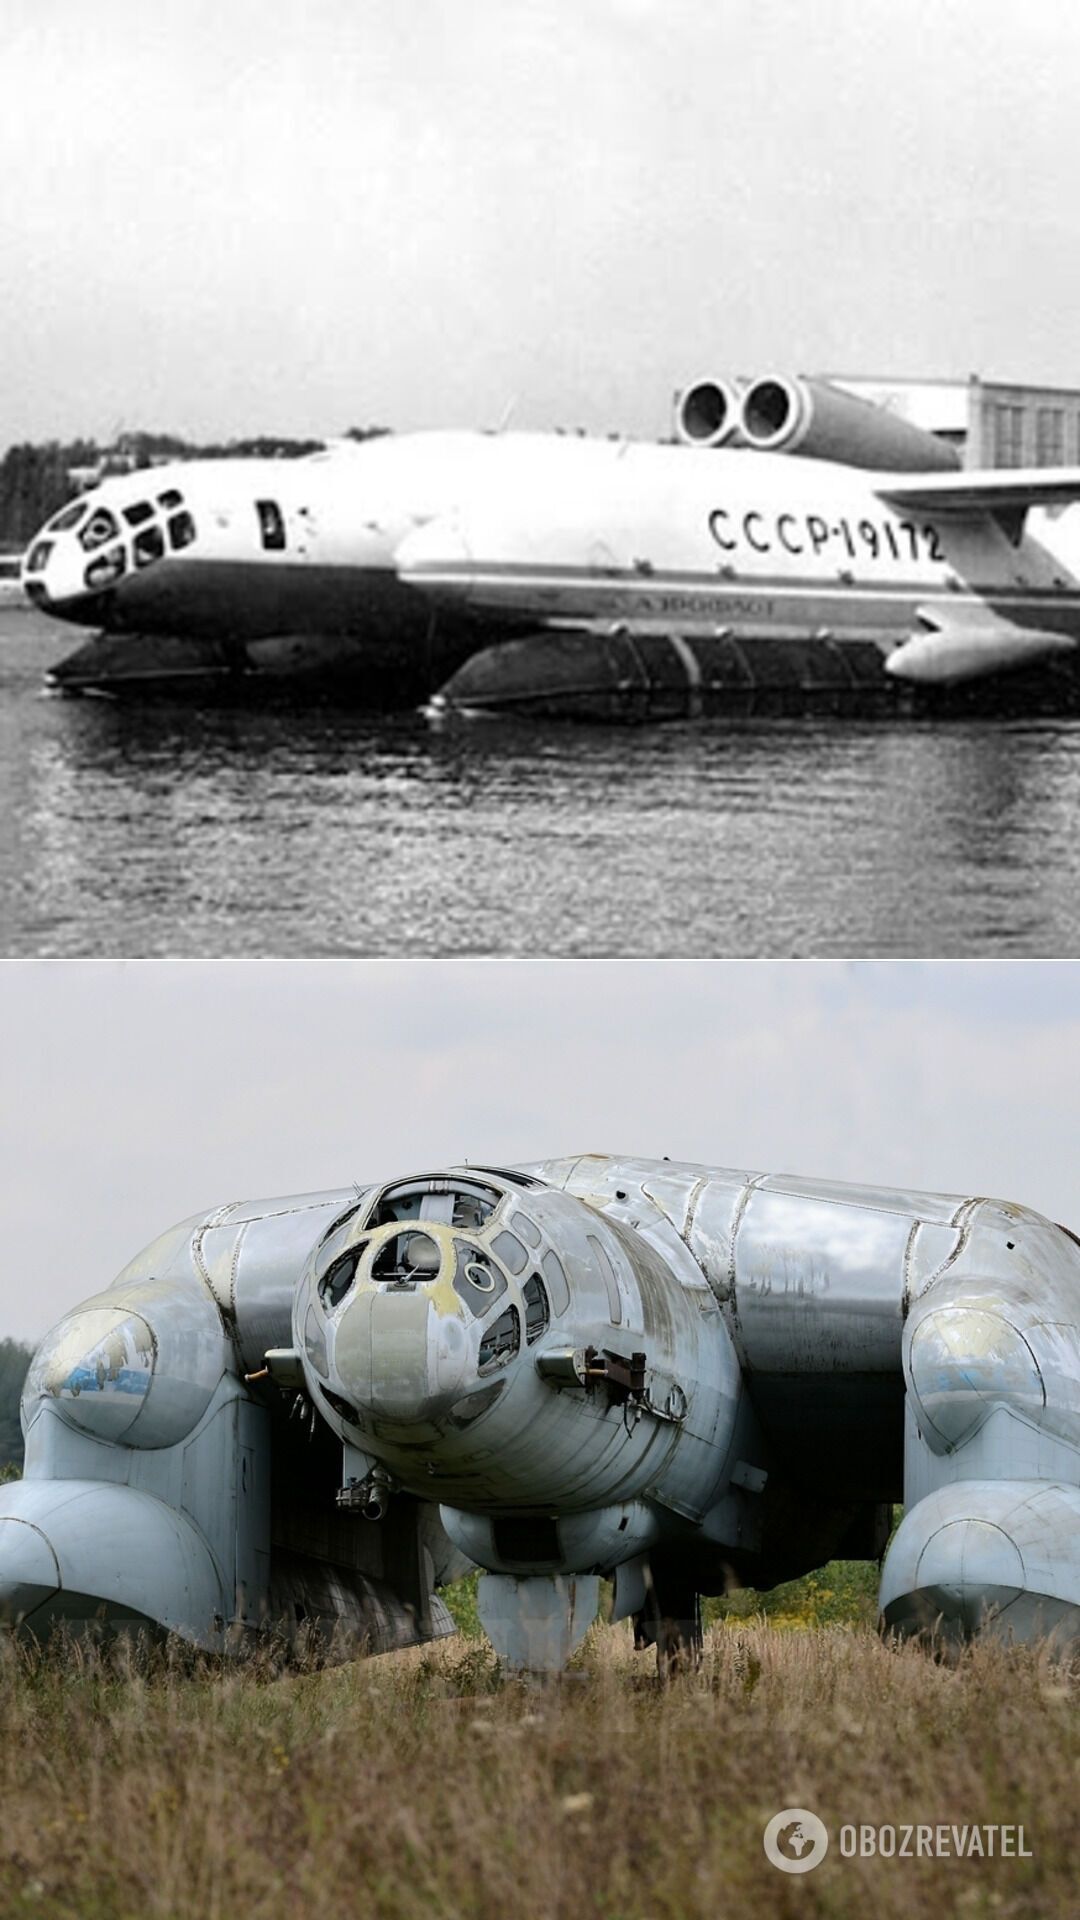 ВВА-14 радянсько-італійського конструктора Роберта Бартіні – справжнє "повітряне чудовисько" з вертикальним зльотом і посадкою, амфібія, екранольот, апарат мав досить значну вантажопідйомність. Проєкт виявився надто амбіційним: лише один із двох ВВА-14 зберігся досі і доживає свого віку в авіаційному музеї в підмосковному Моніно